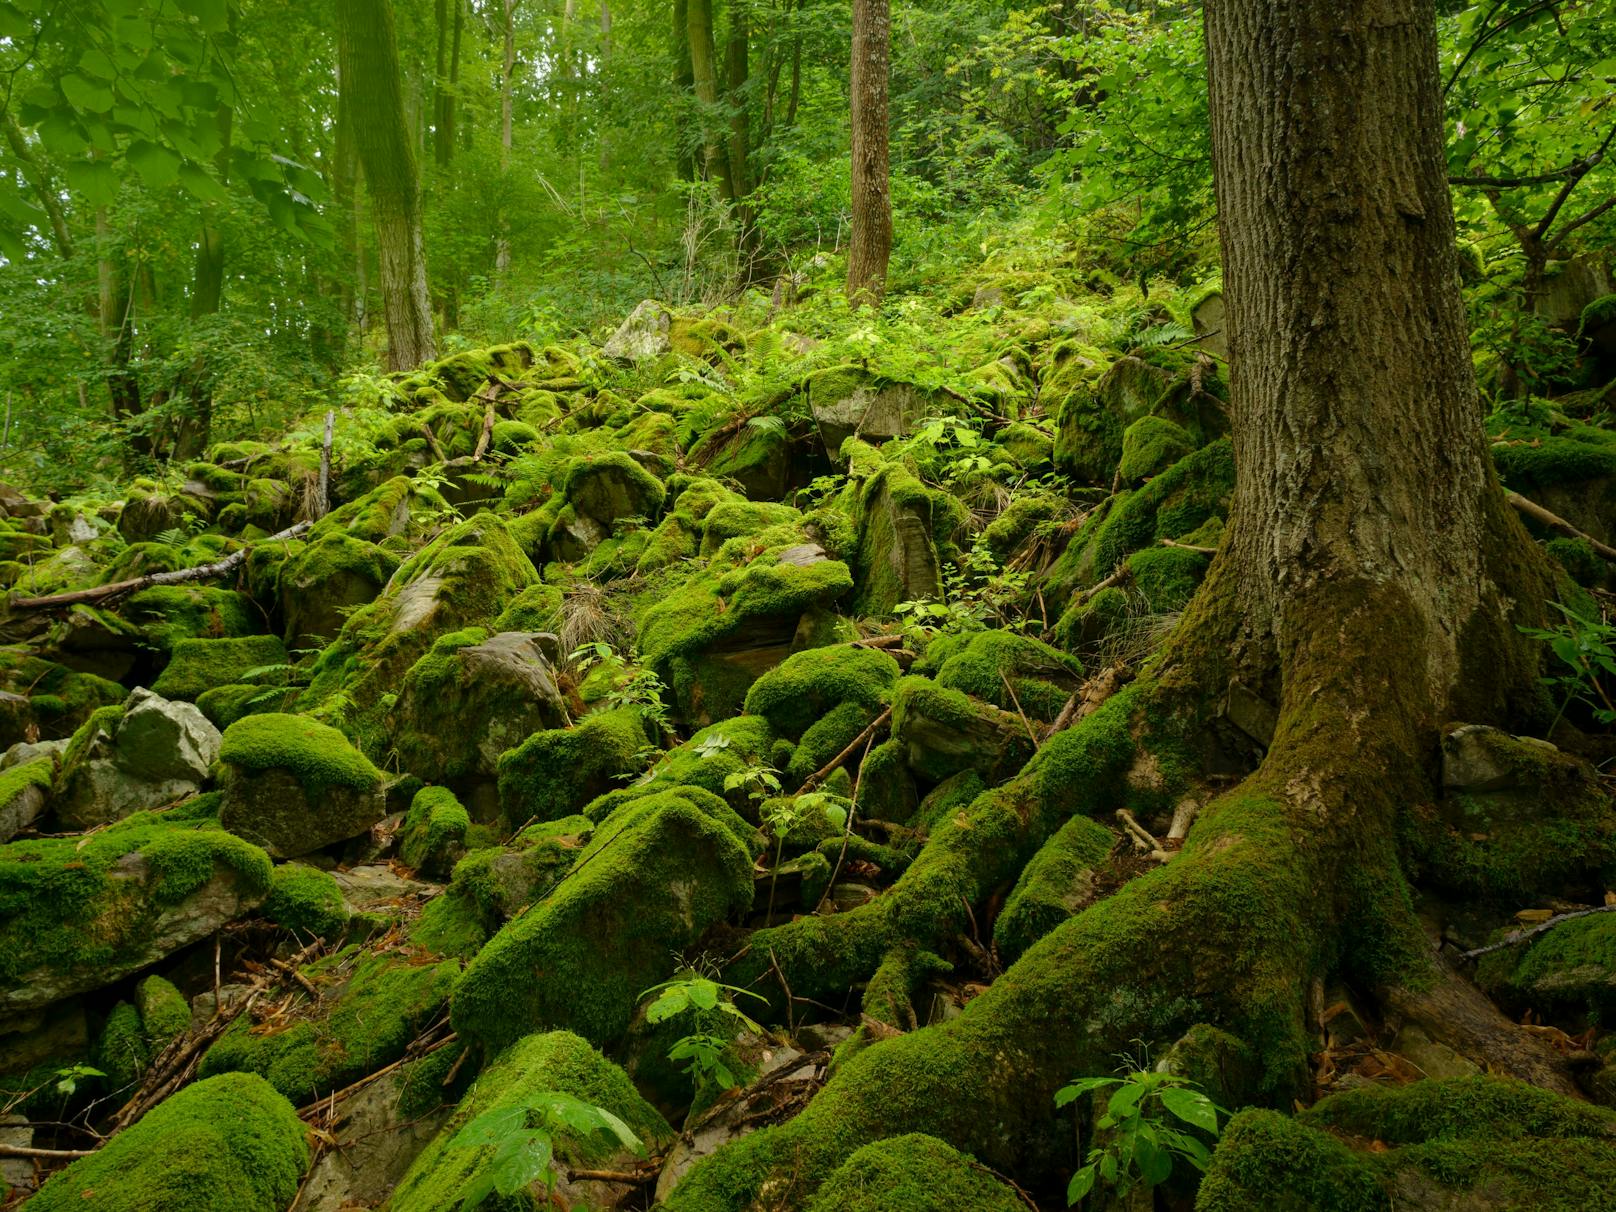 Im Waldviertel im nördlichen Niederösterreich gibt es noch vergleichsweise viele, urwüchsige, wilde Naturlandschaften, die teilweise unbekannt sind.